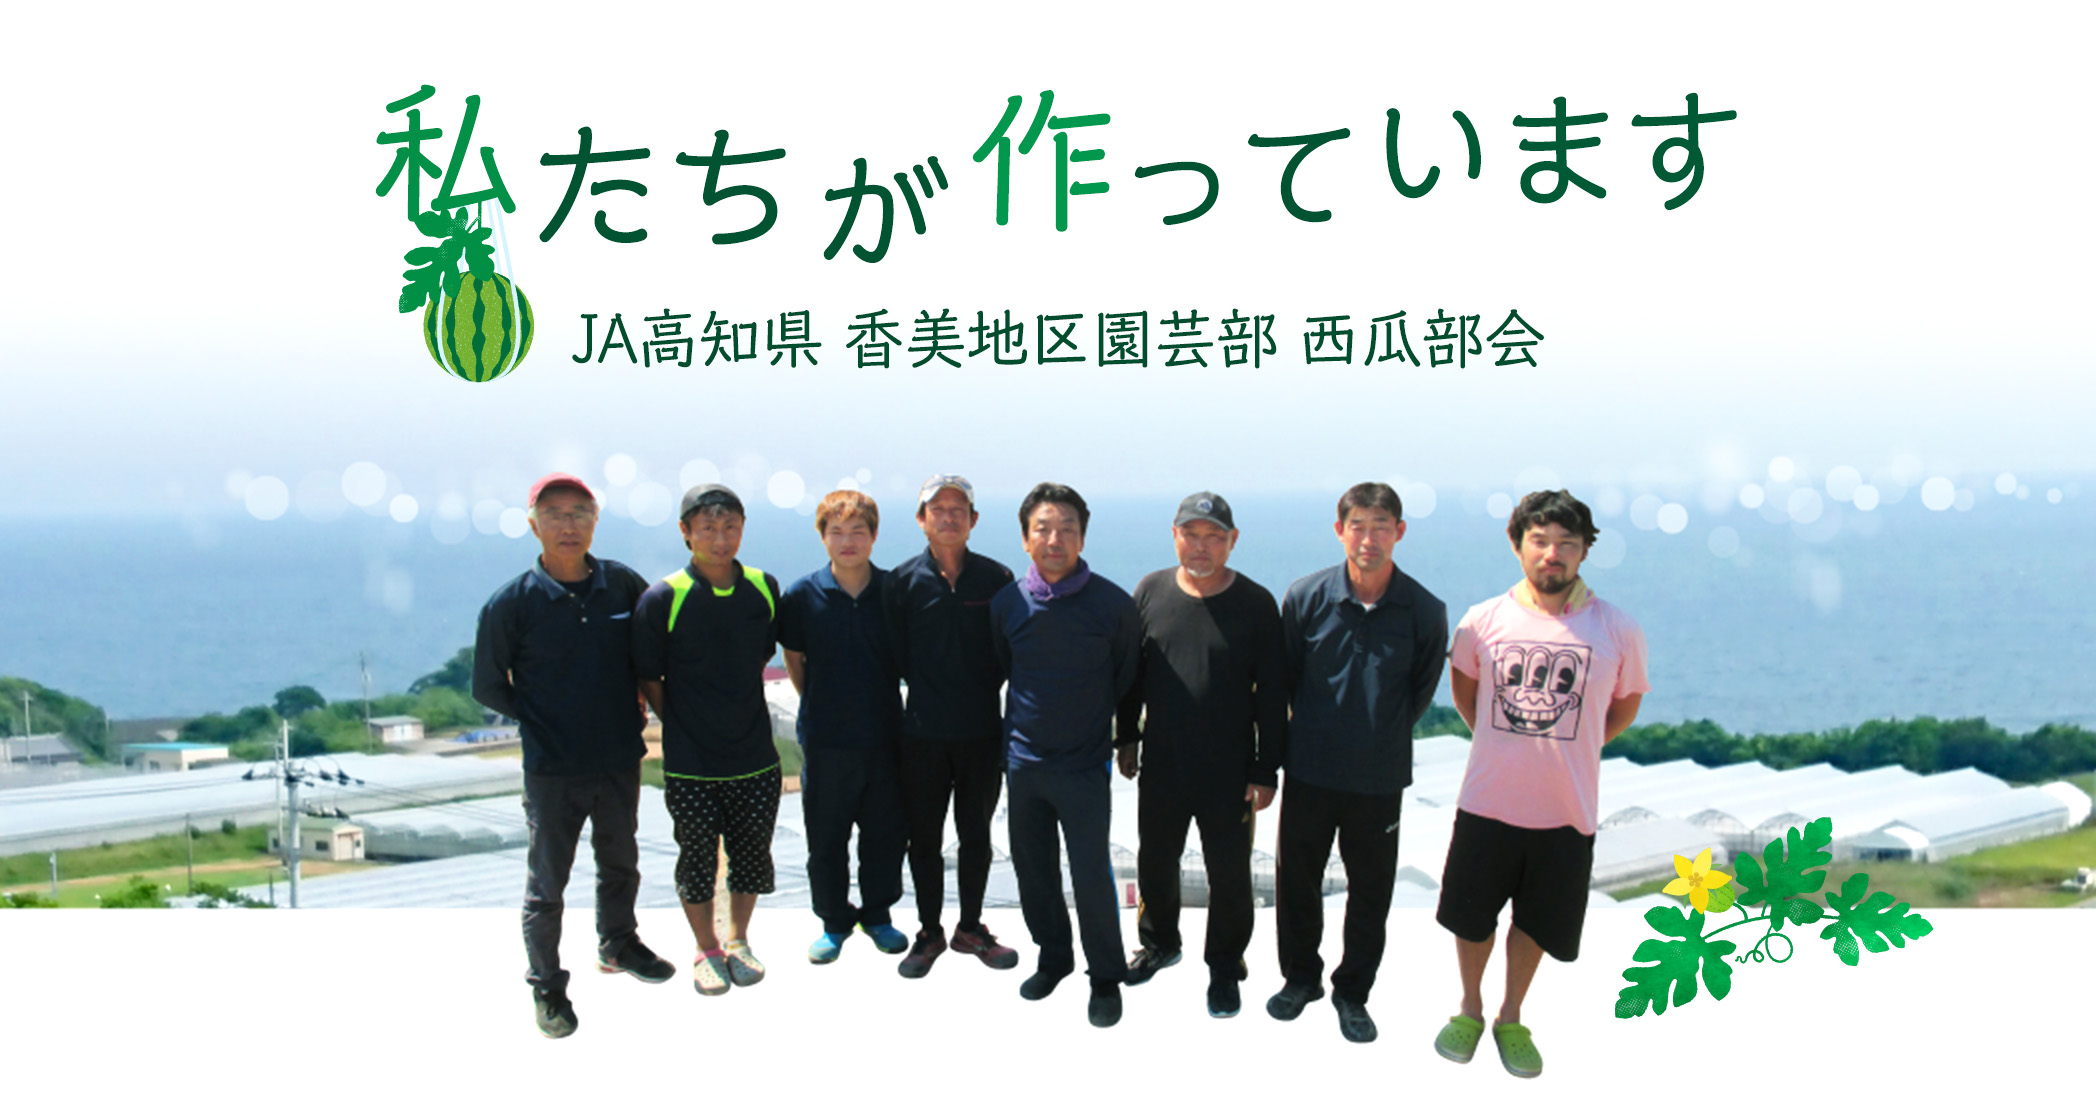 私たちが作っています JA高知県 香美地区園芸部 西瓜部会